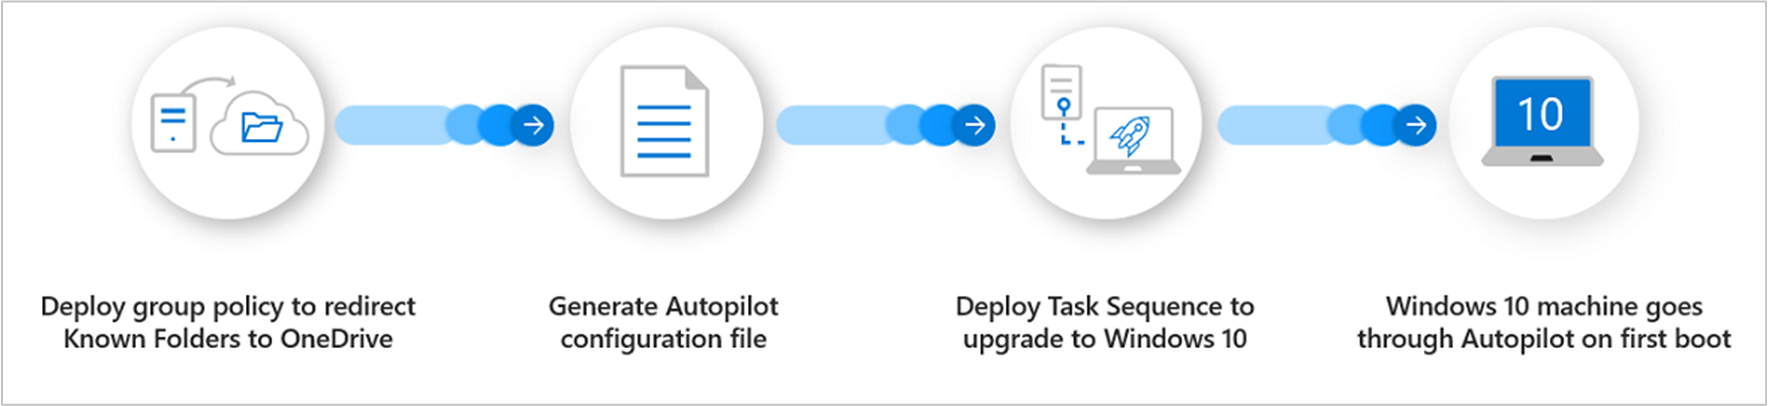 Visão geral do processo para Windows Autopilot para dispositivos existentes